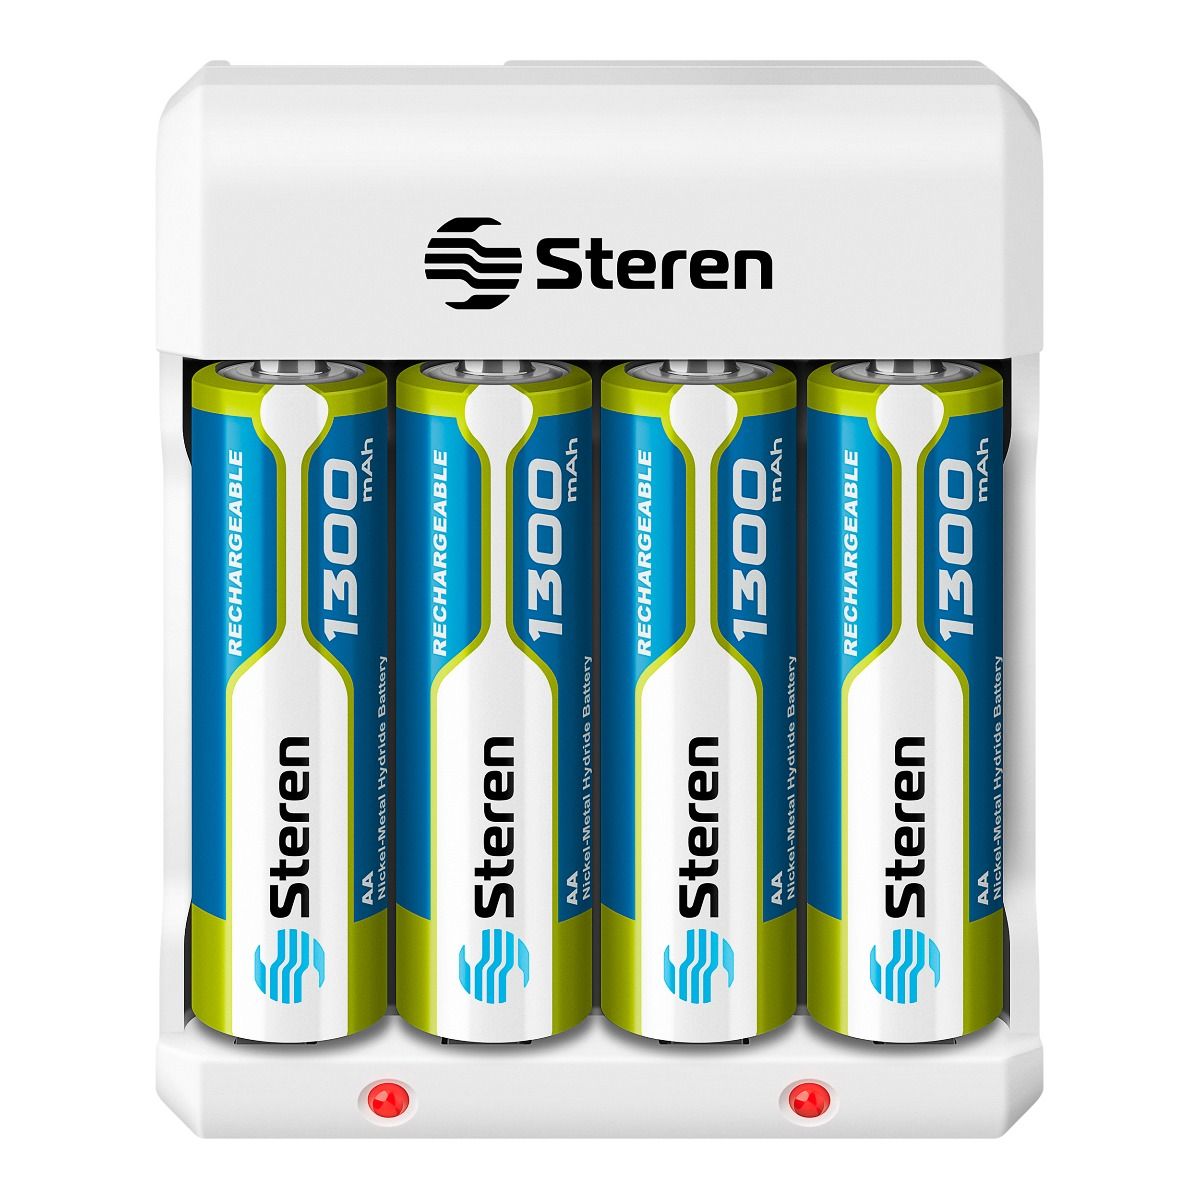 6 pilas de litio tipo botón “CR2032” Steren Tienda en L